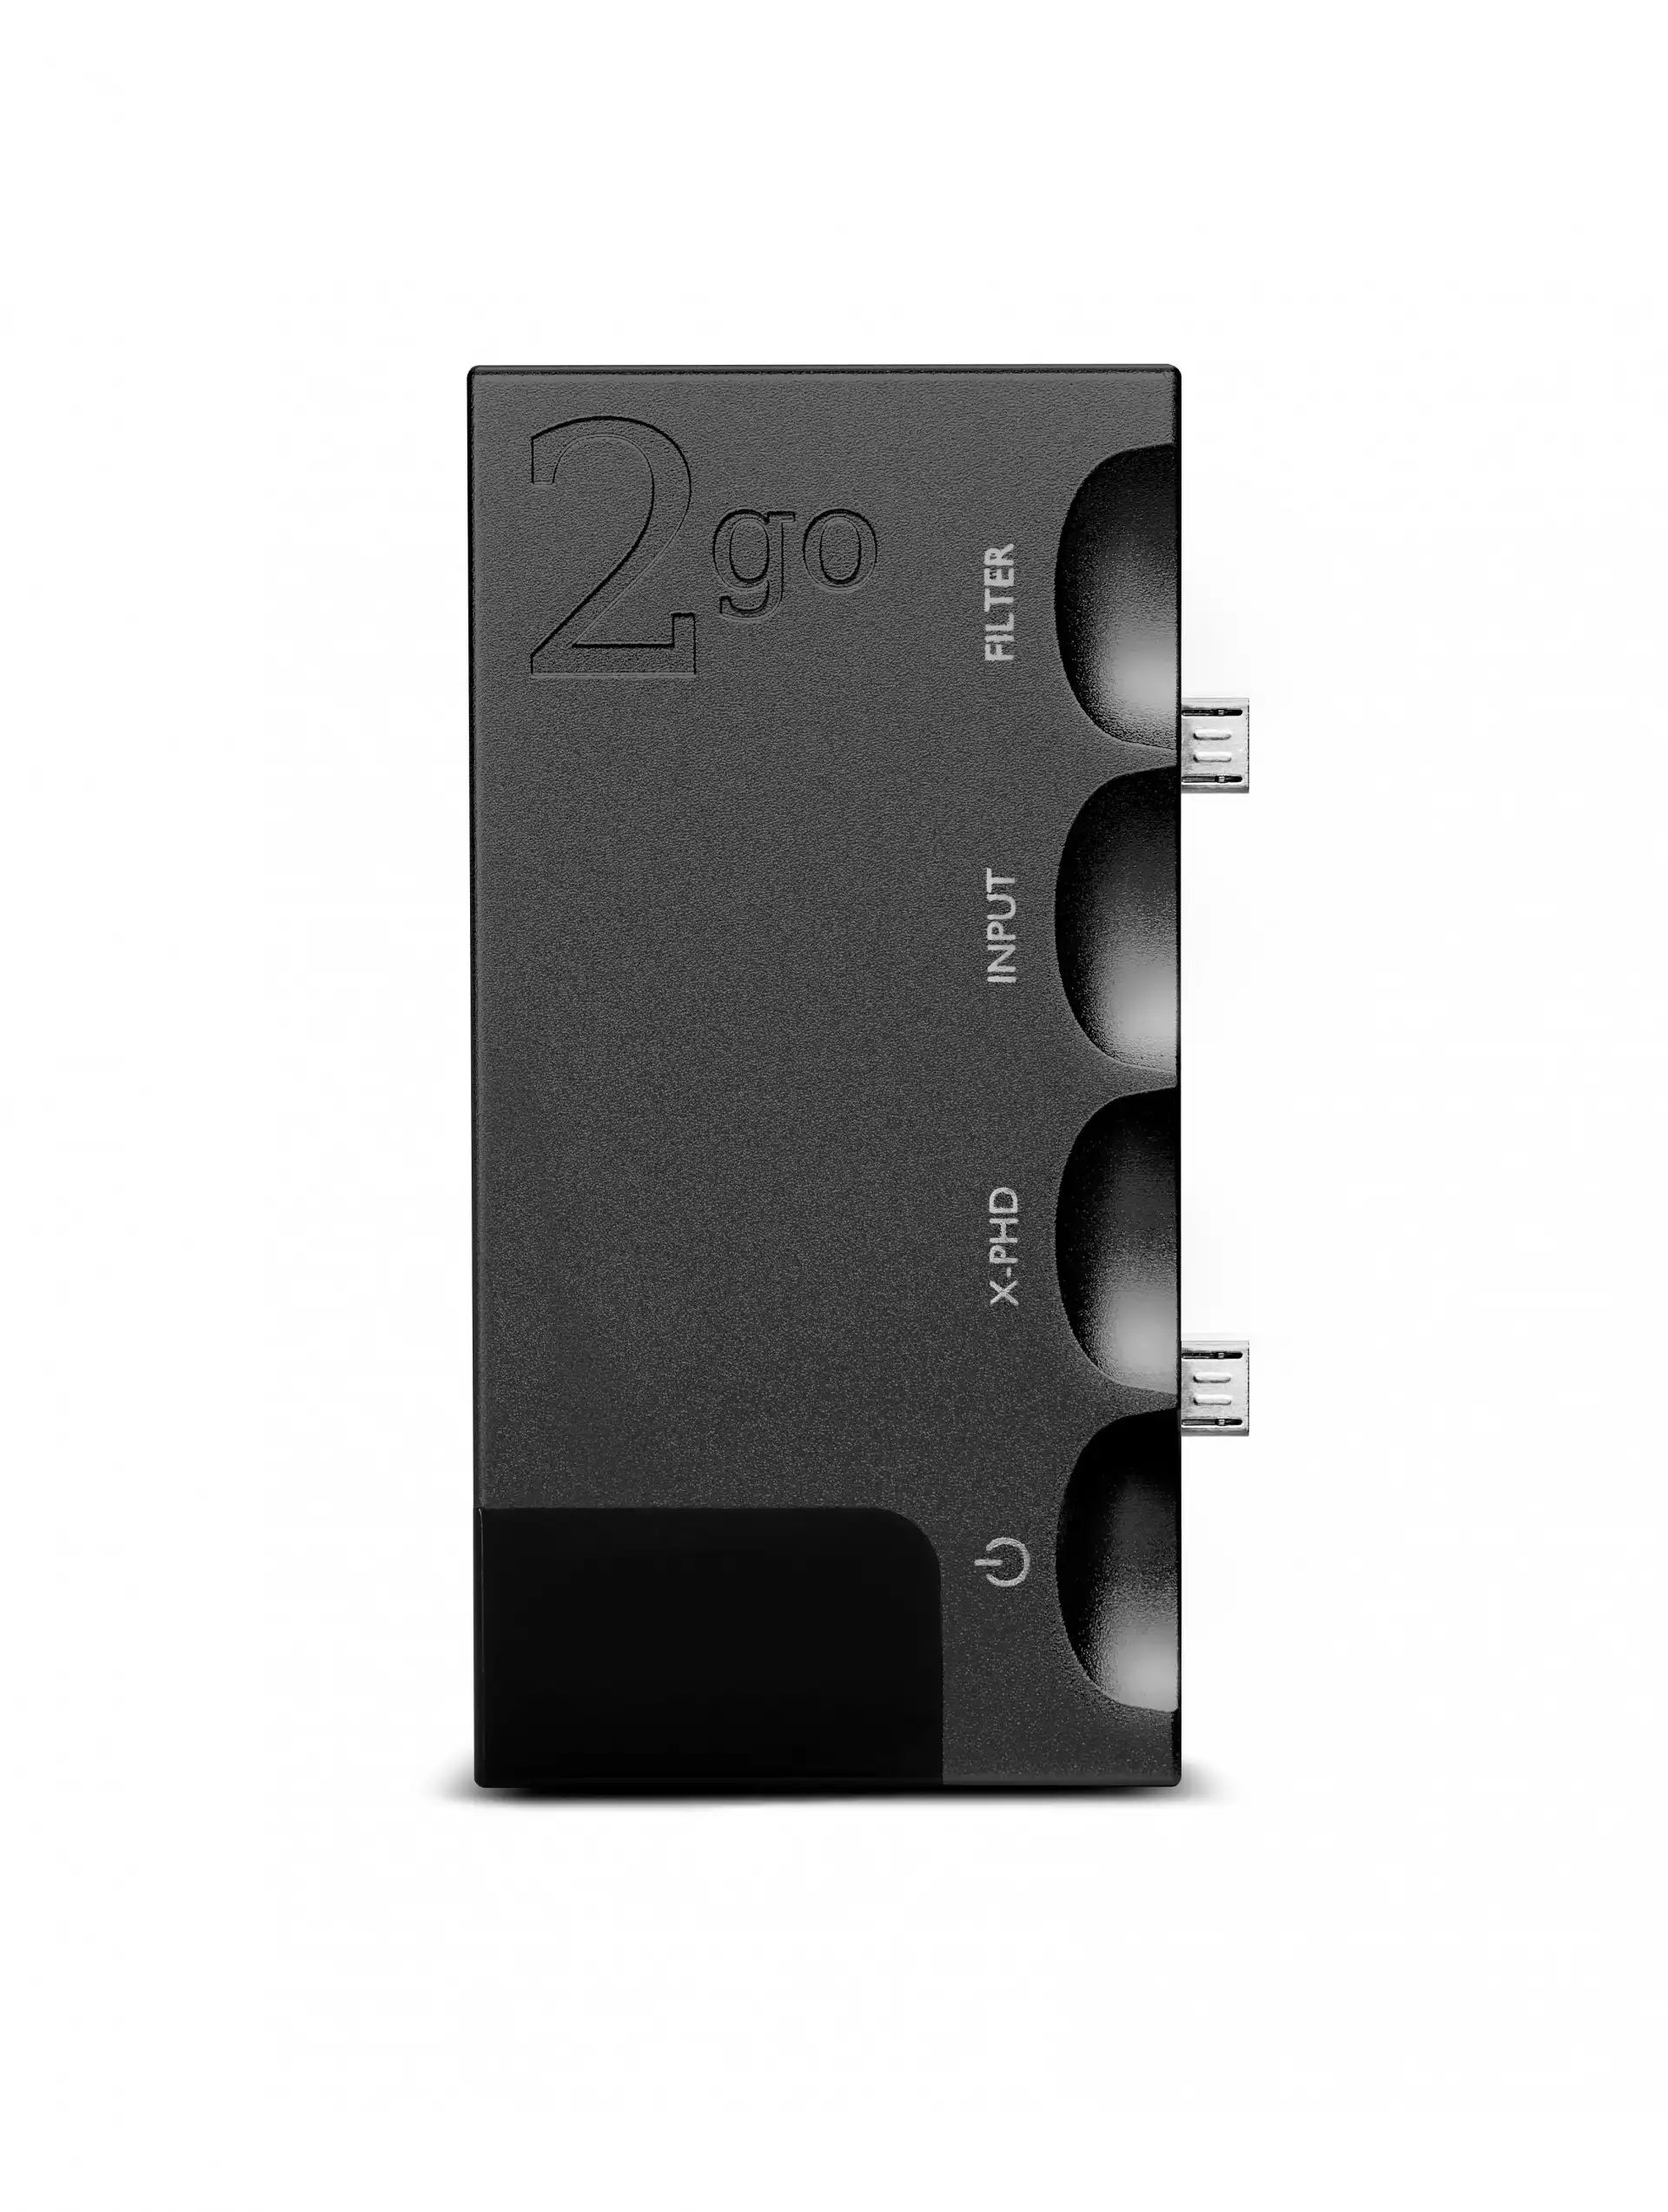 2go - Music streamer/player for Hugo 2